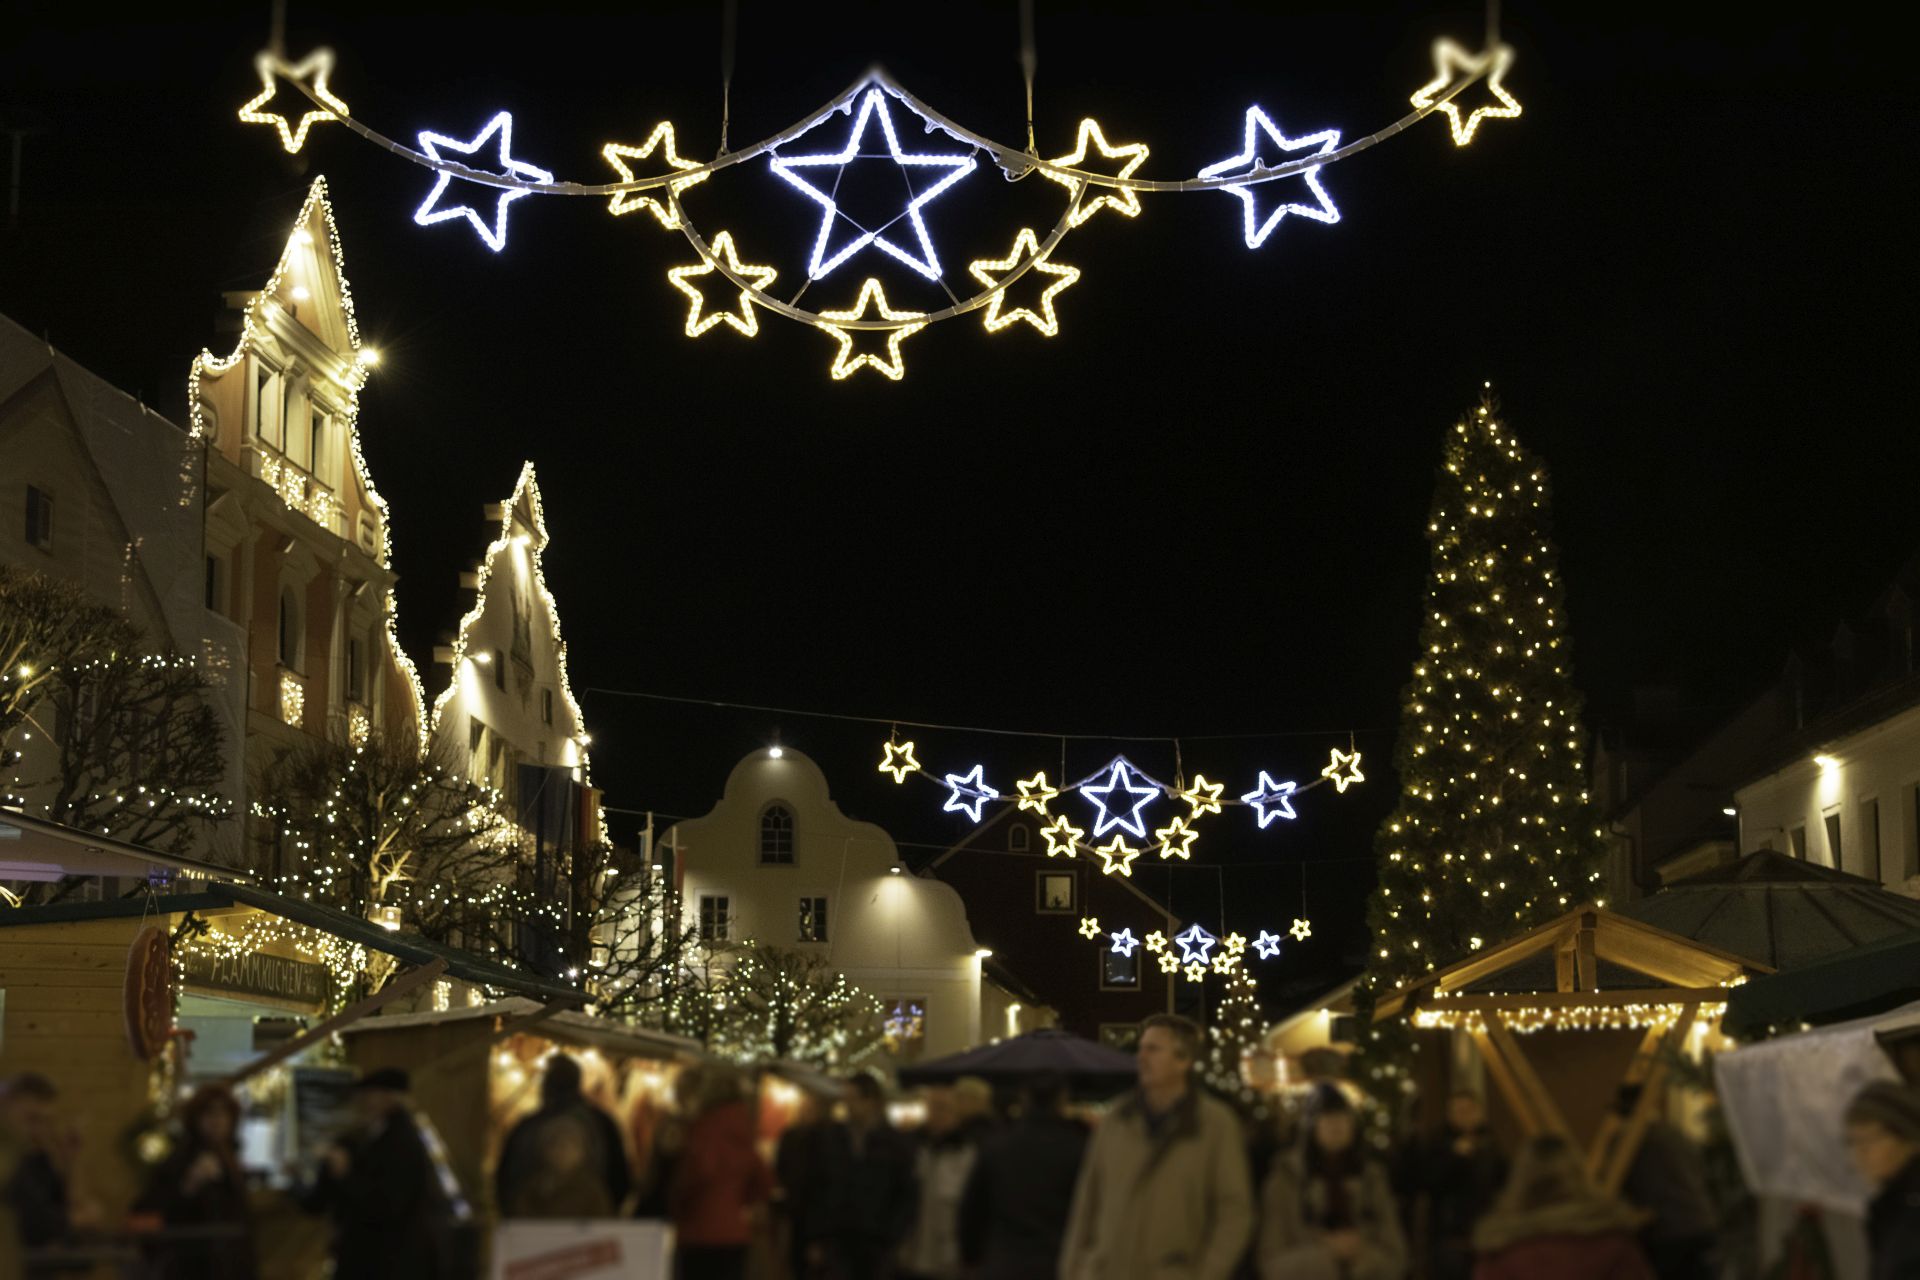 Der Kelheimer Stadtplatz erstrahlt am Christkindlmarkt mit zahlreichen Lichtern. Zahlreiche Menschen genießen an den Ständen Glühwein und weihnachtliche Schmankerl.